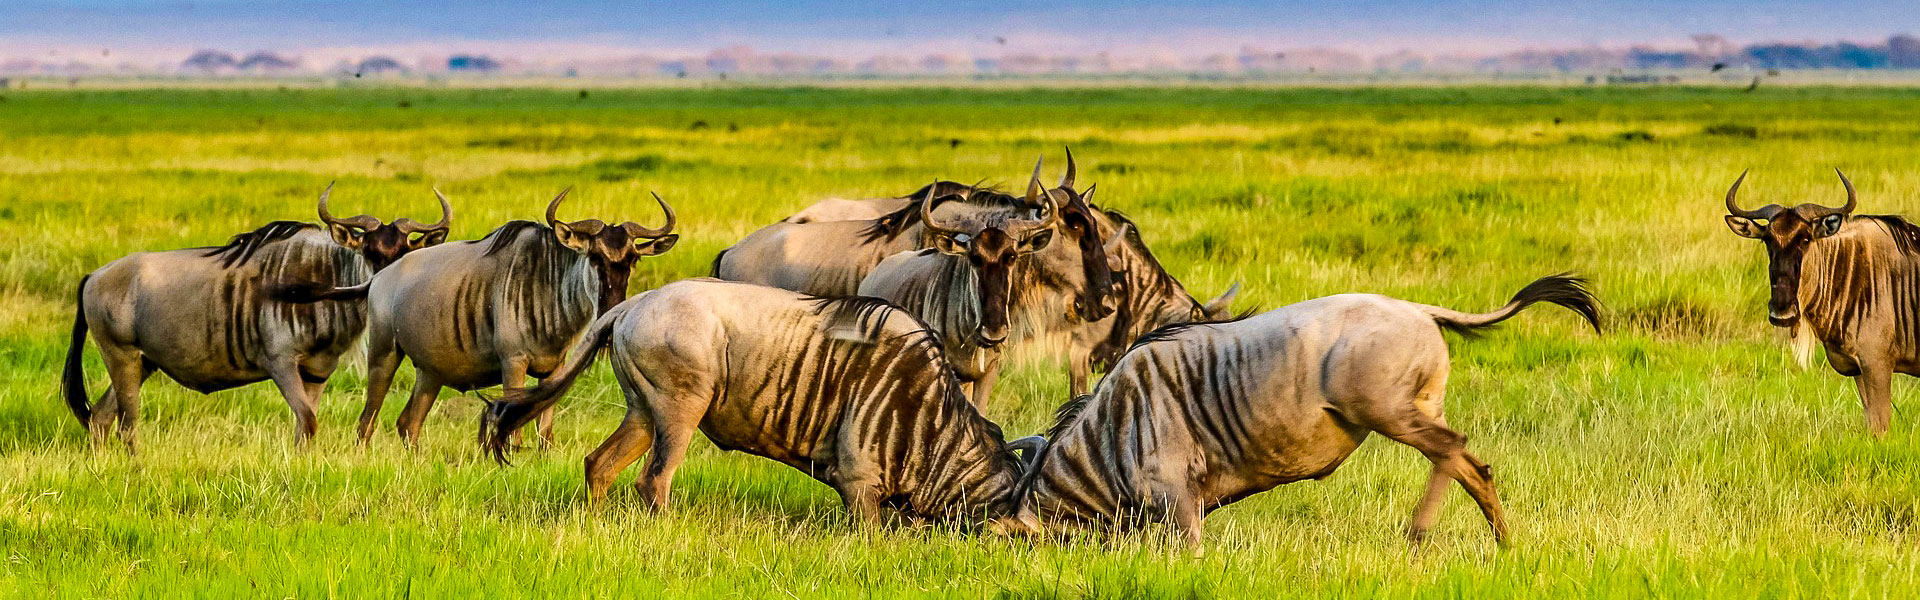 Wildebeests in Uganda